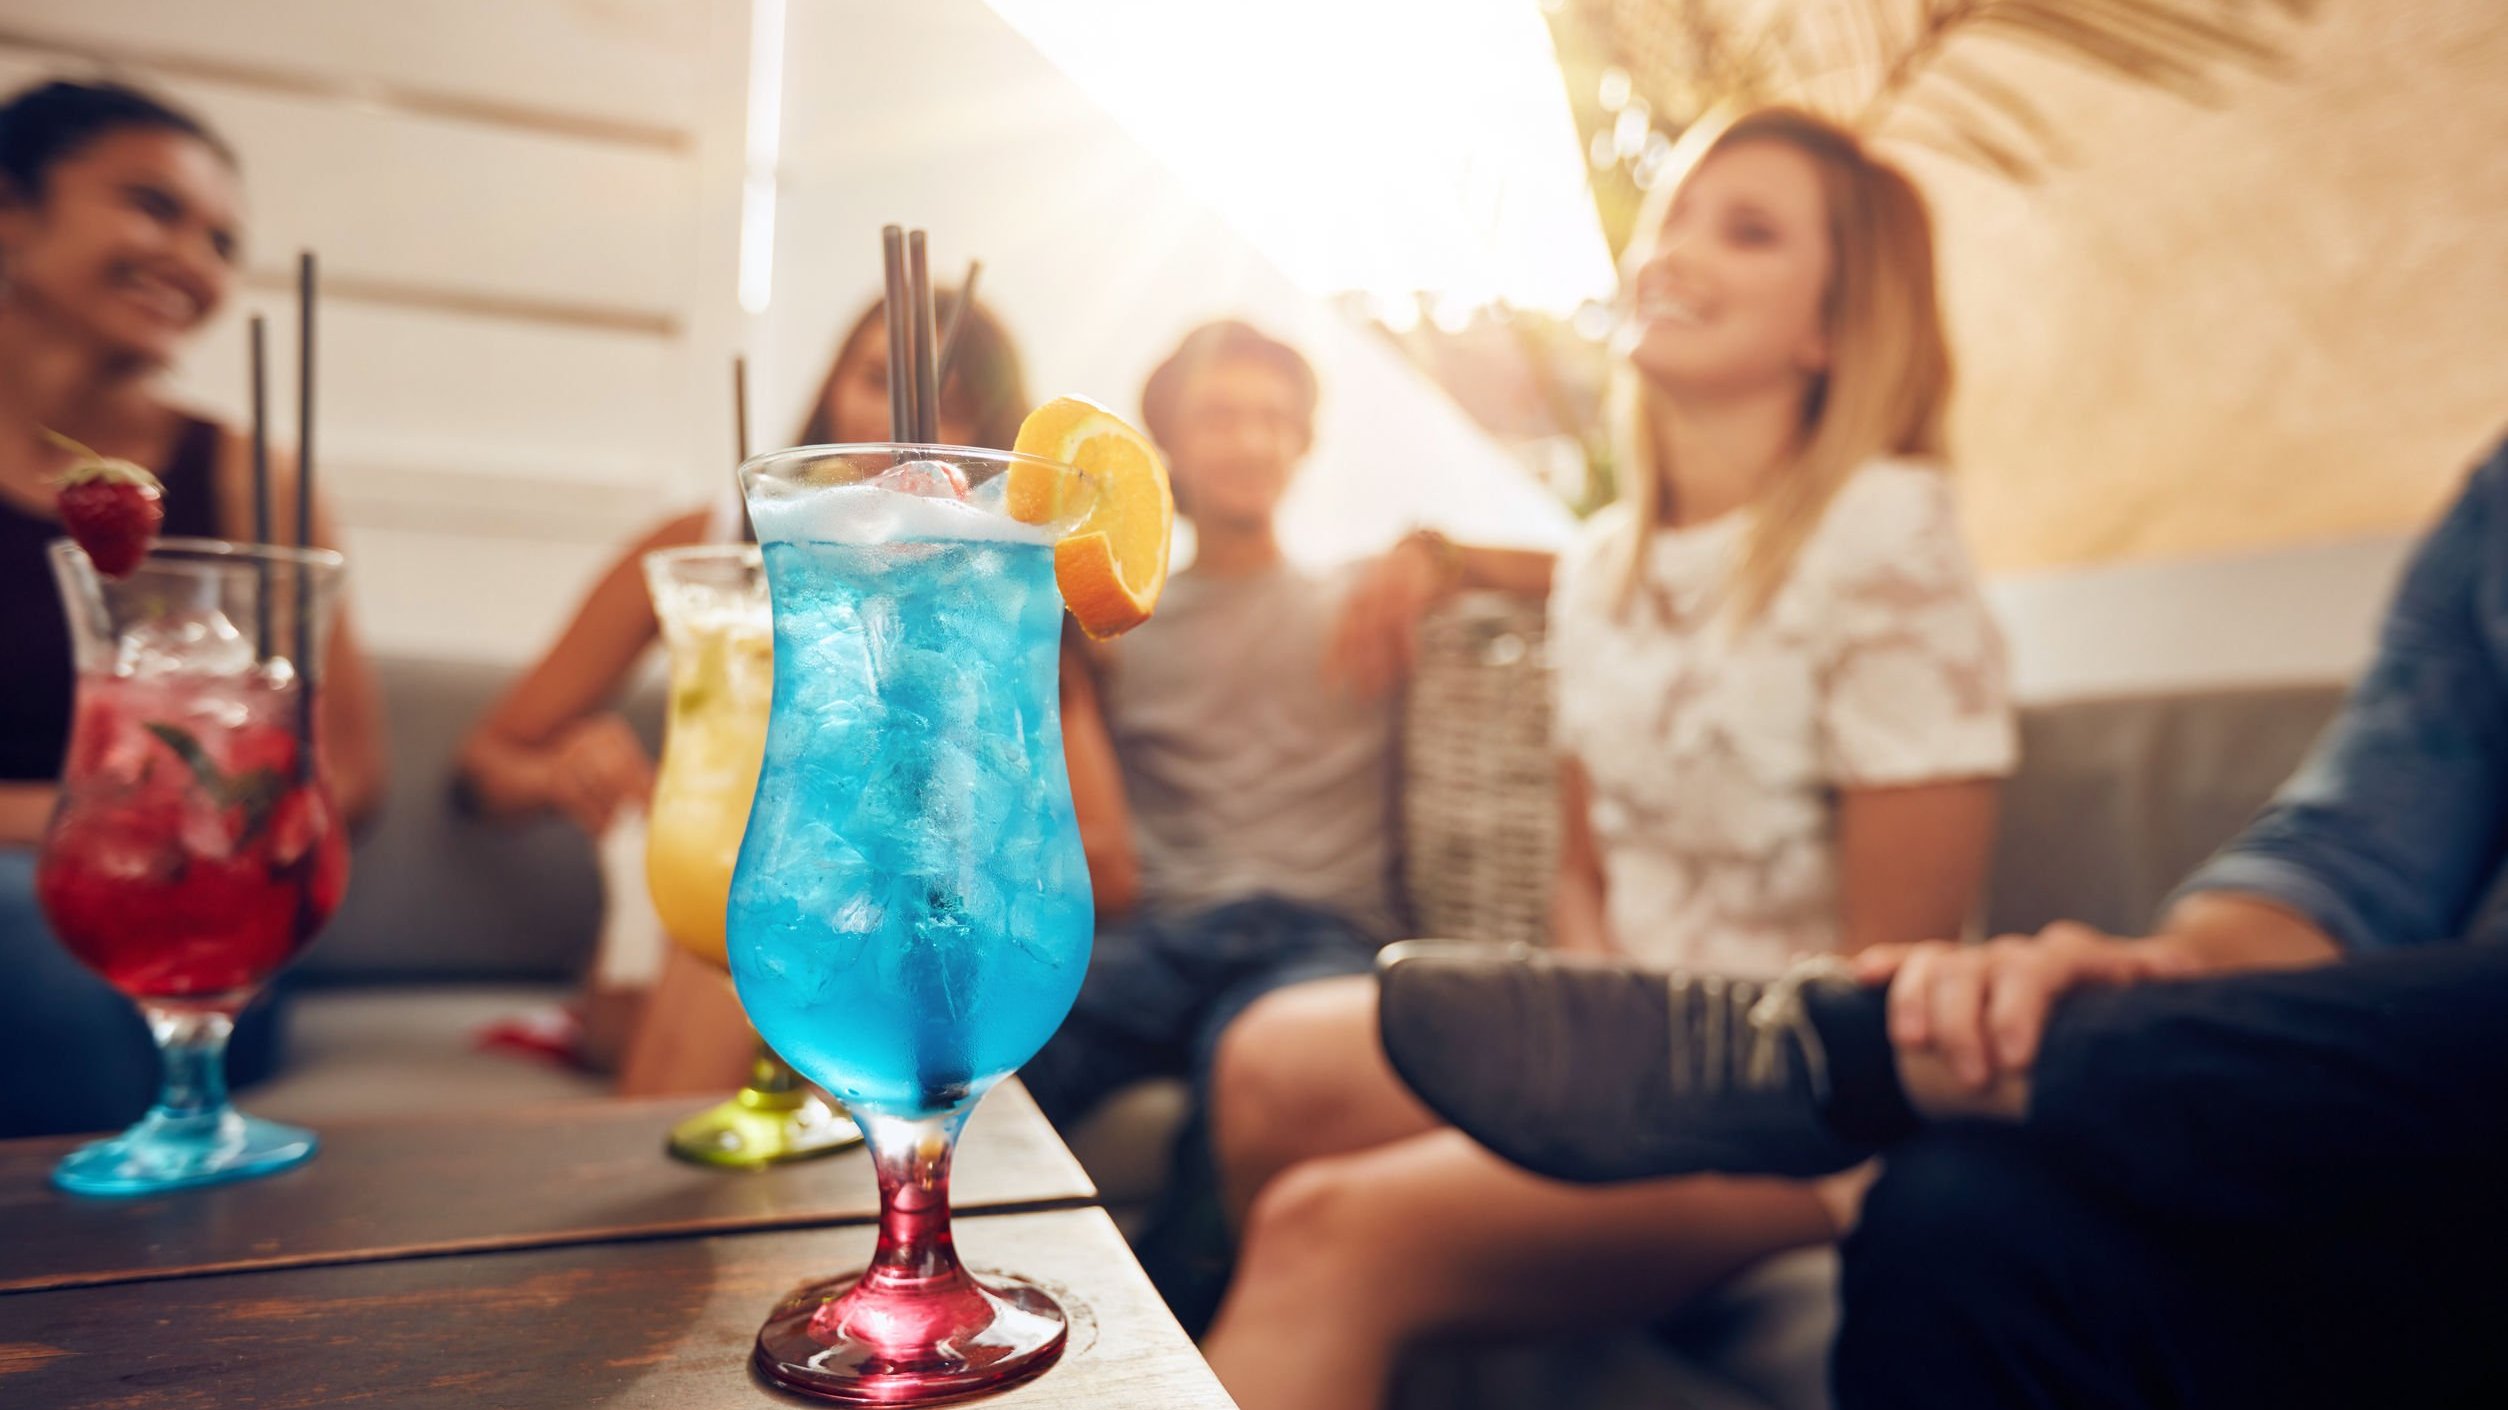 Grupo de pessoas sentadas num sofá, e mesa de centro com drinks coloridos.